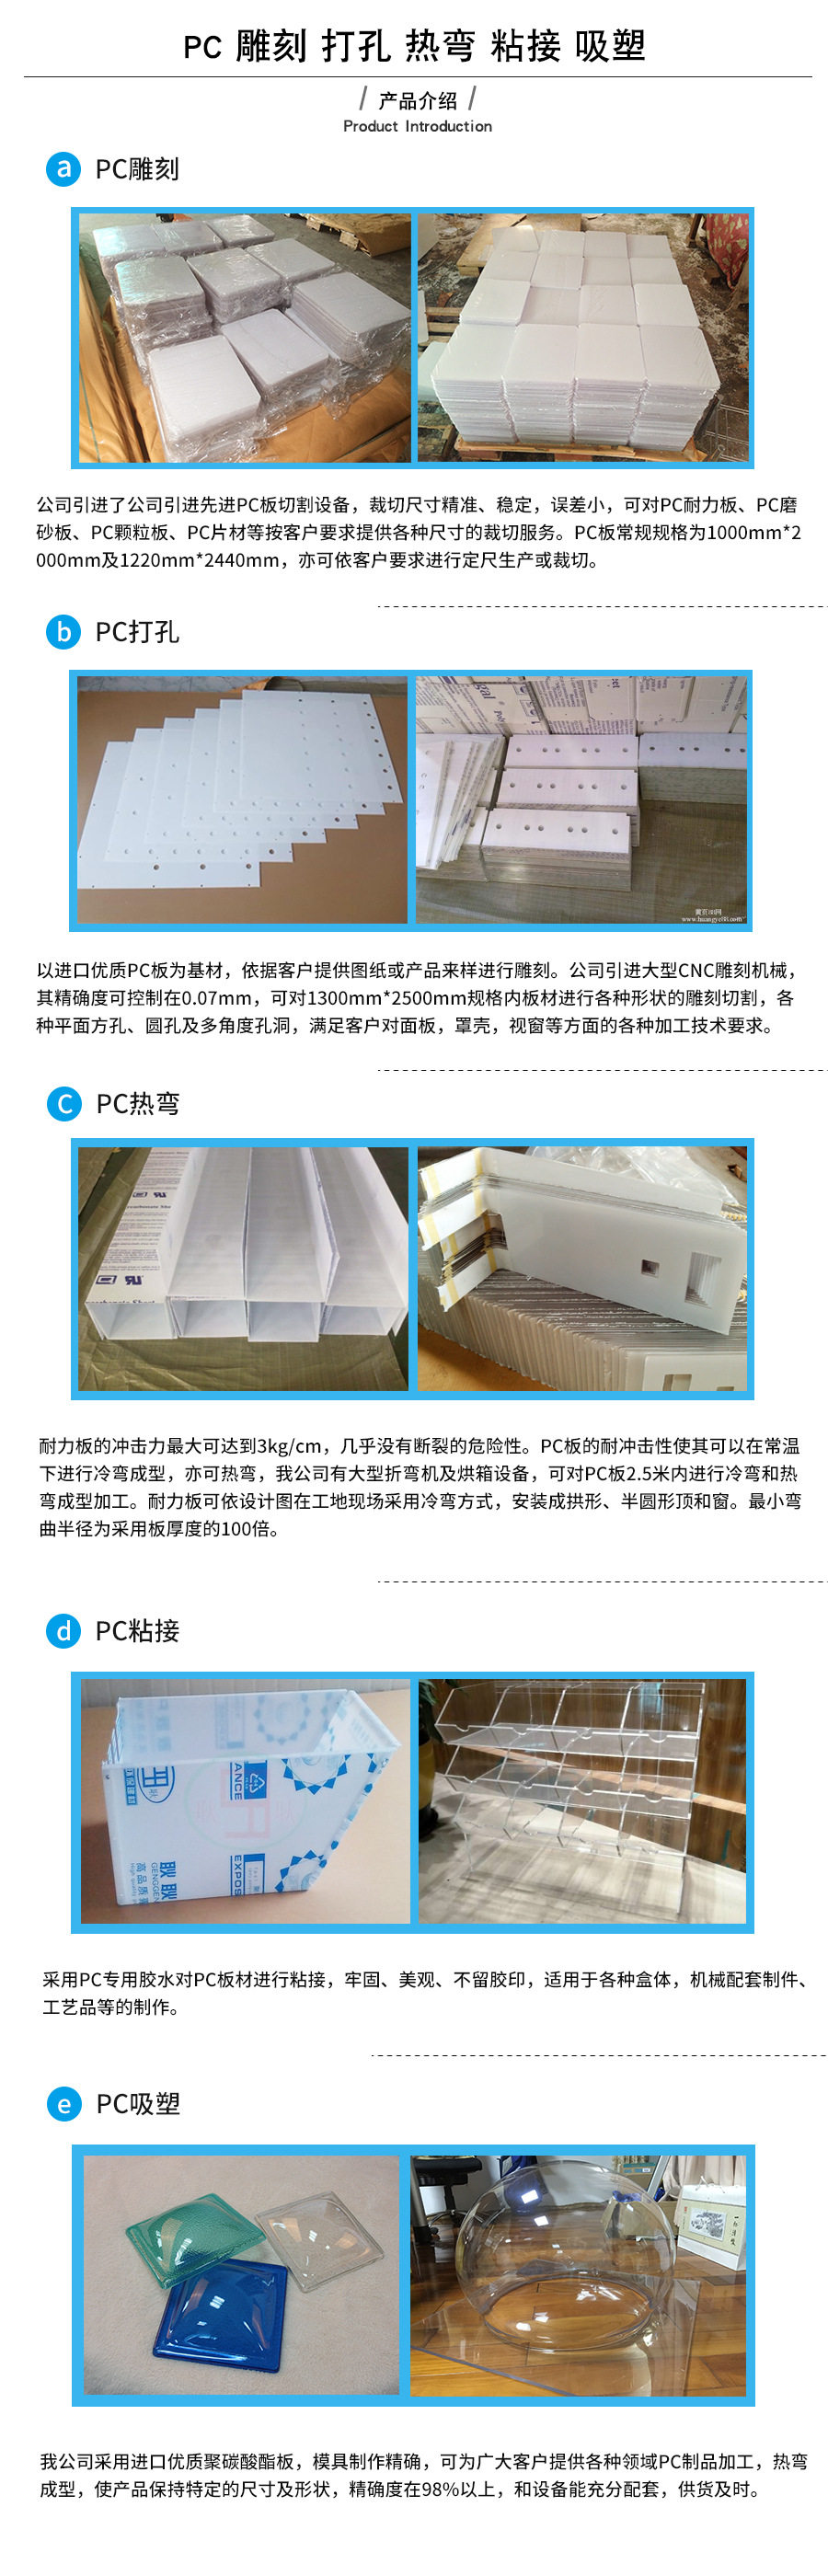 深圳透明pc板 pc板加工 雕刻 热弯 吸塑成型 来图可定制加工示例图2